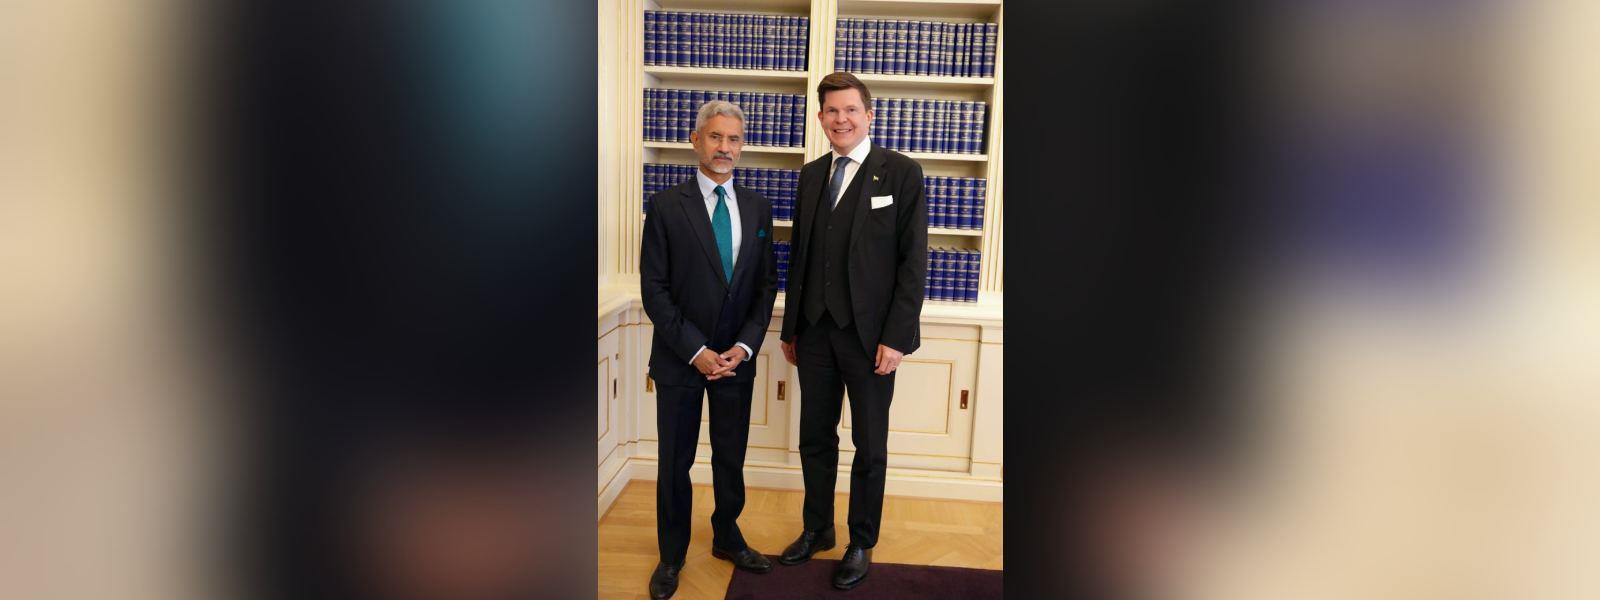 विदेश मंत्री डॉ. एस. जयशंकर ने स्टॉकहोम में स्वीडन के रिक्सडैग के स्पीकर महामहिम डॉ. एंड्रियास नोरलेन से मुलाकात की